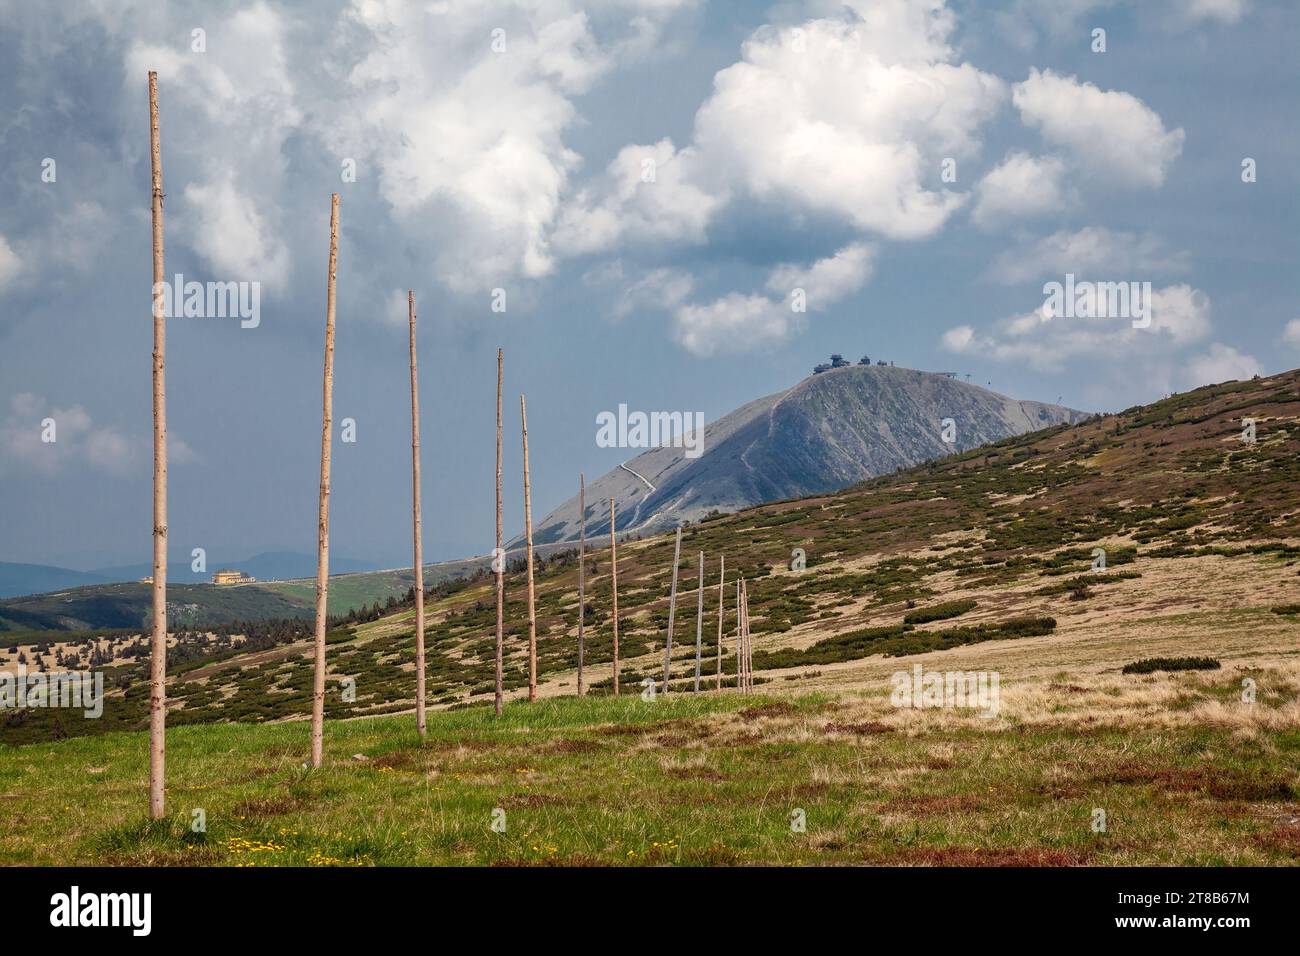 Sentiero segnato da pali, paesaggi montani, montagne giganti, Snezka, paesaggio montano Foto Stock